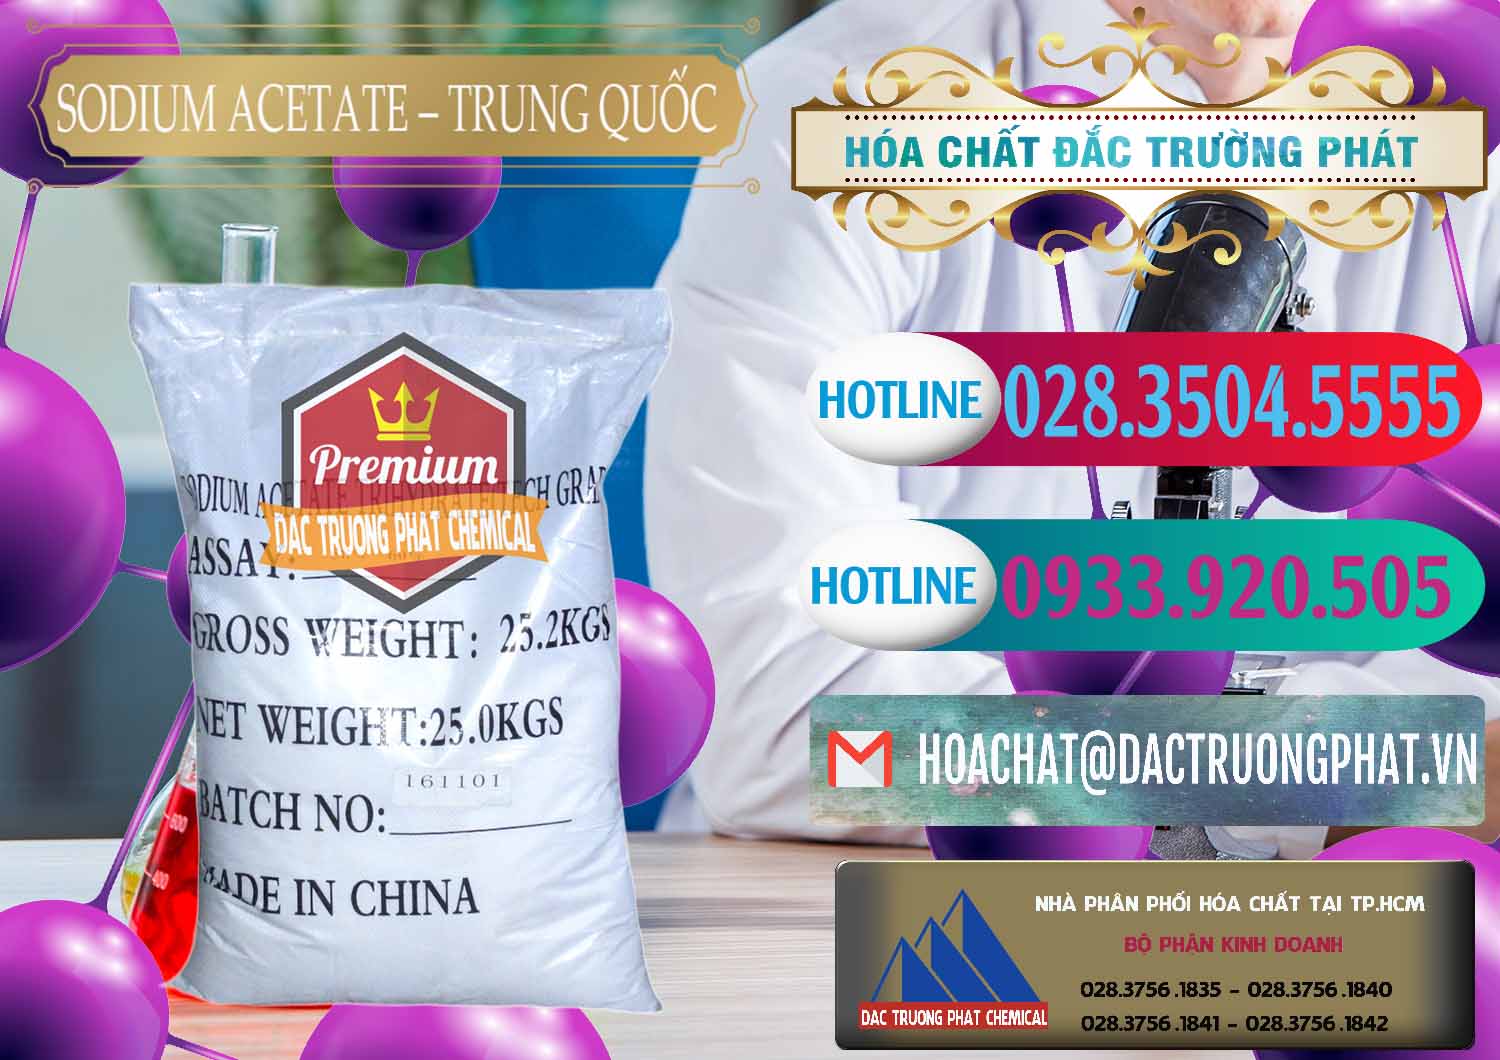 Cty chuyên bán & cung cấp Sodium Acetate - Natri Acetate Trung Quốc China - 0134 - Cung cấp - kinh doanh hóa chất tại TP.HCM - truongphat.vn